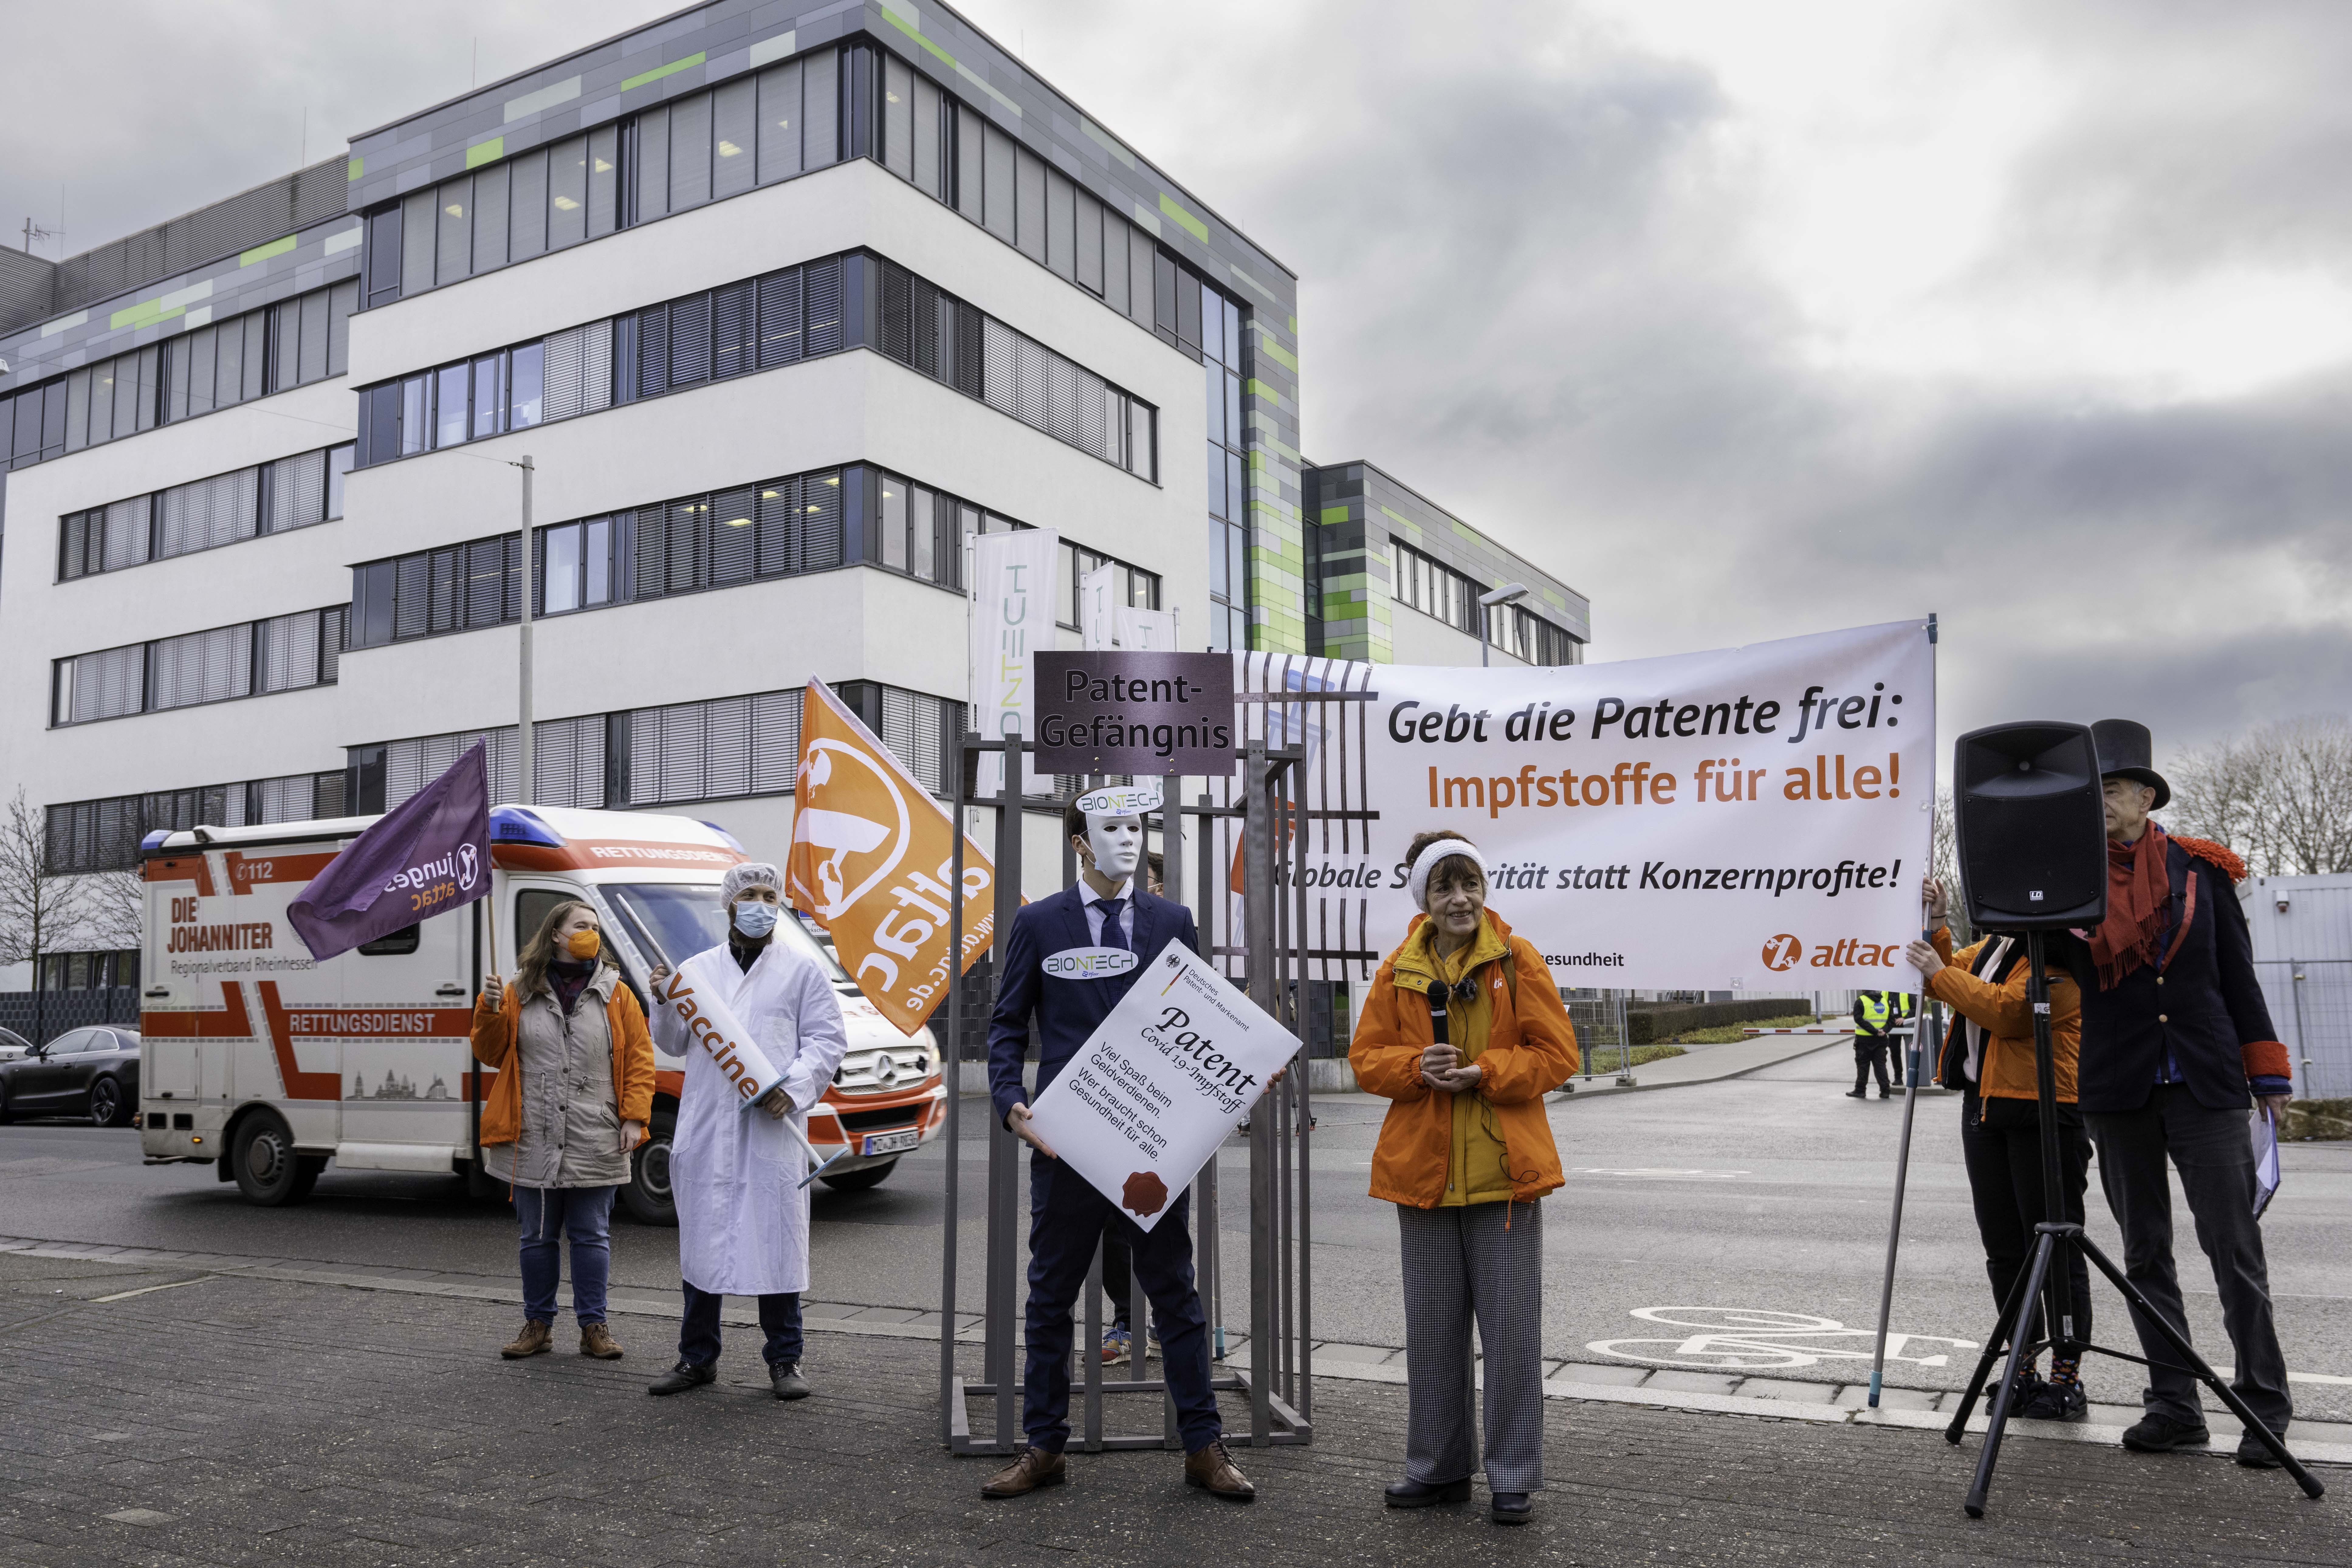 Ein Panoramabild er Protestierenden, links eine Aktivistin mit junges Attac-Flagge, dann ein Mensch der als Arzt verkleidet ist und eine übergroße Impfspritze hält, ein Patente-Käfig und ein Mann im Anzug der ein übergroßes Impfpatent hält.